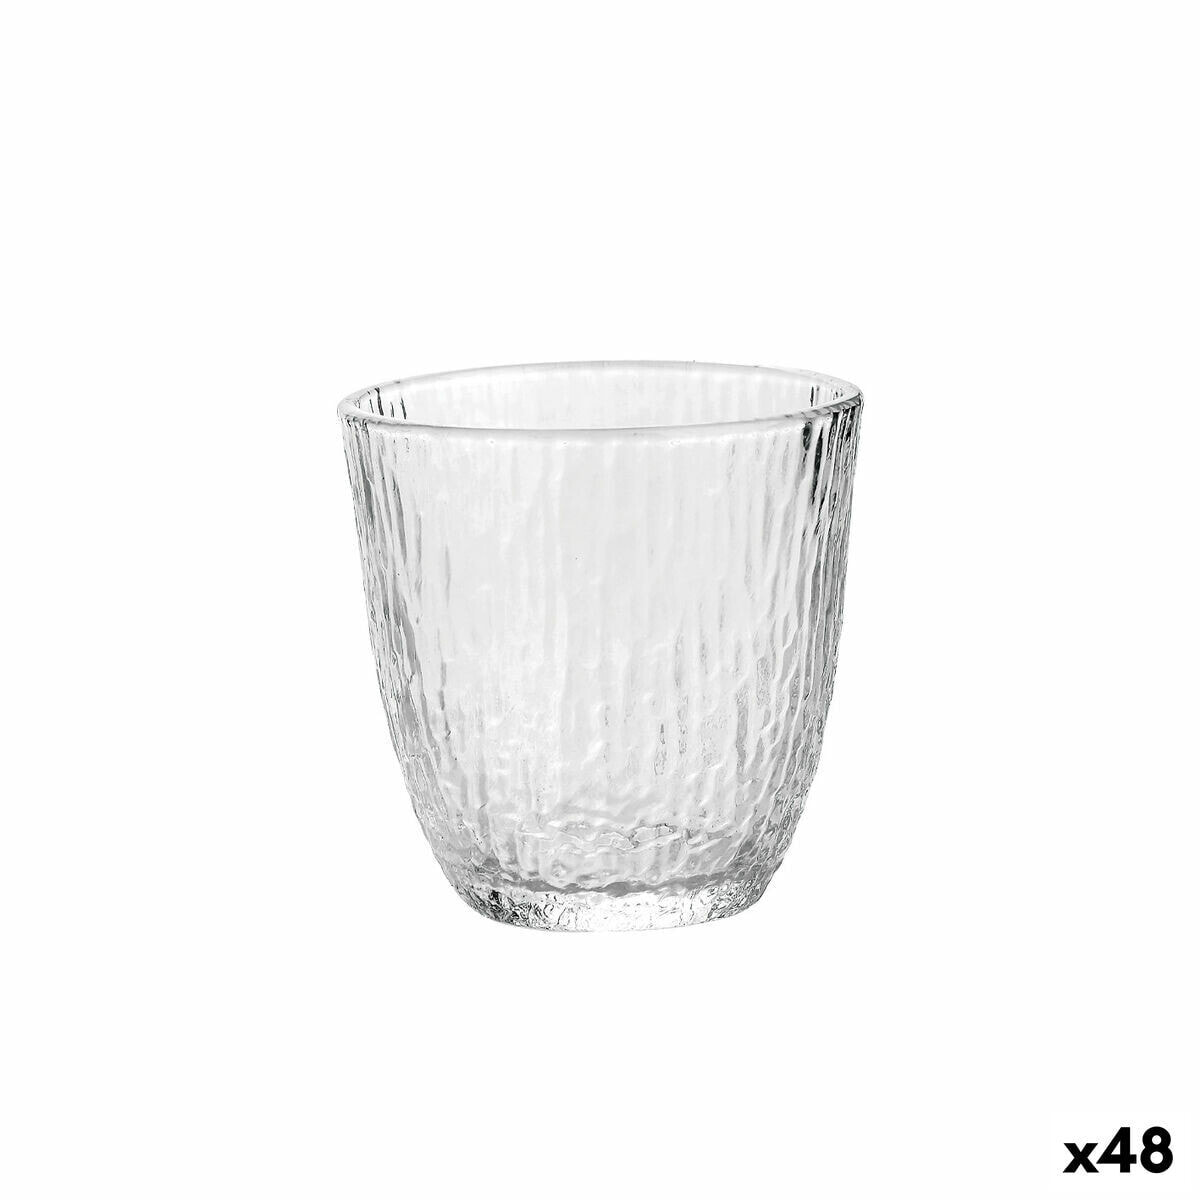 Glass La Mediterránea Odiel 300 ml (48 Units)